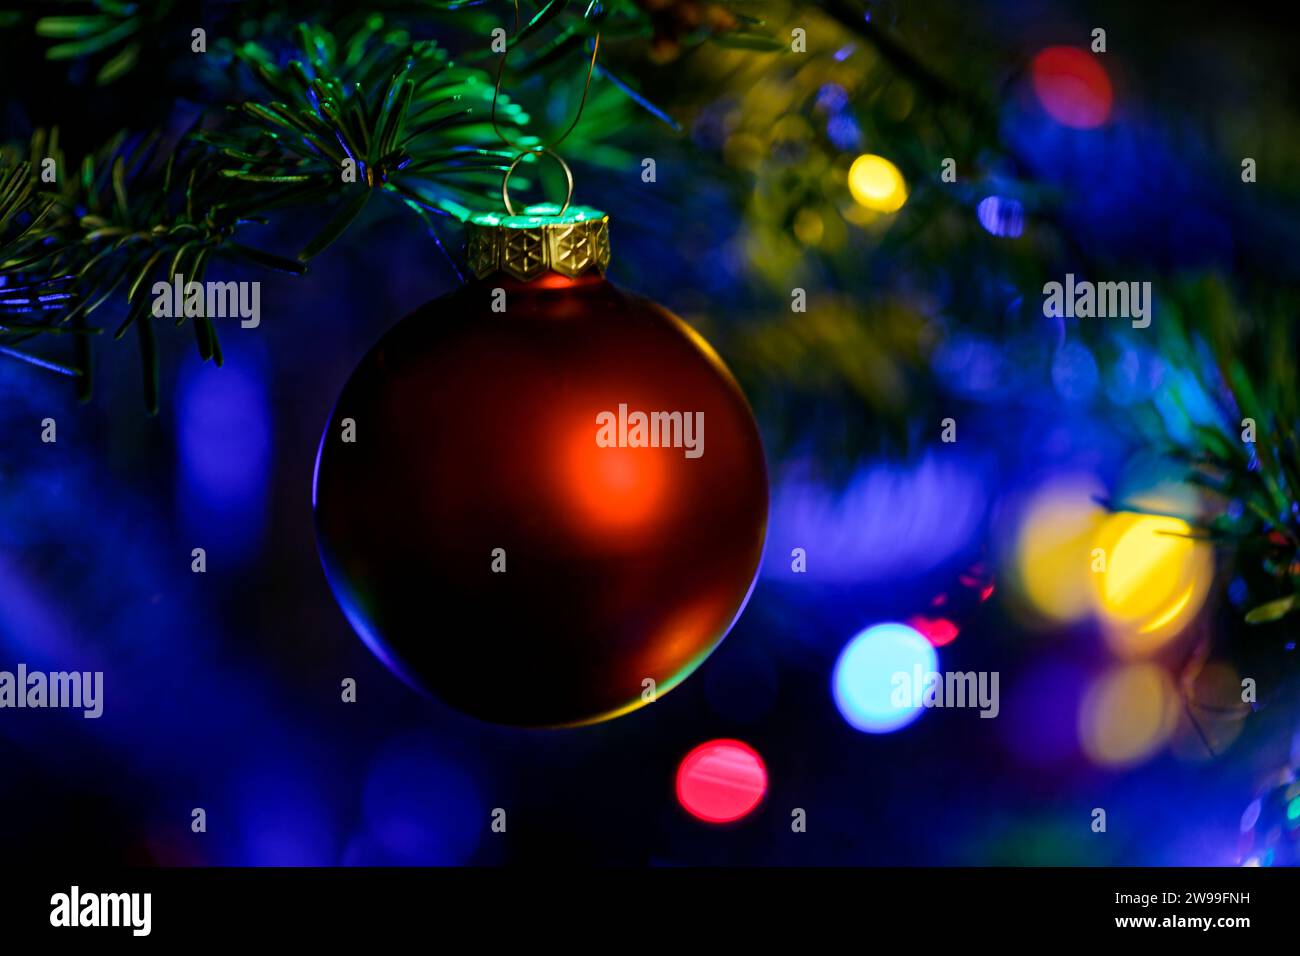 Un ornement de Noël rouge est suspendu à un arbre, éclairé par les lumières vibrantes de la saison des fêtes Banque D'Images